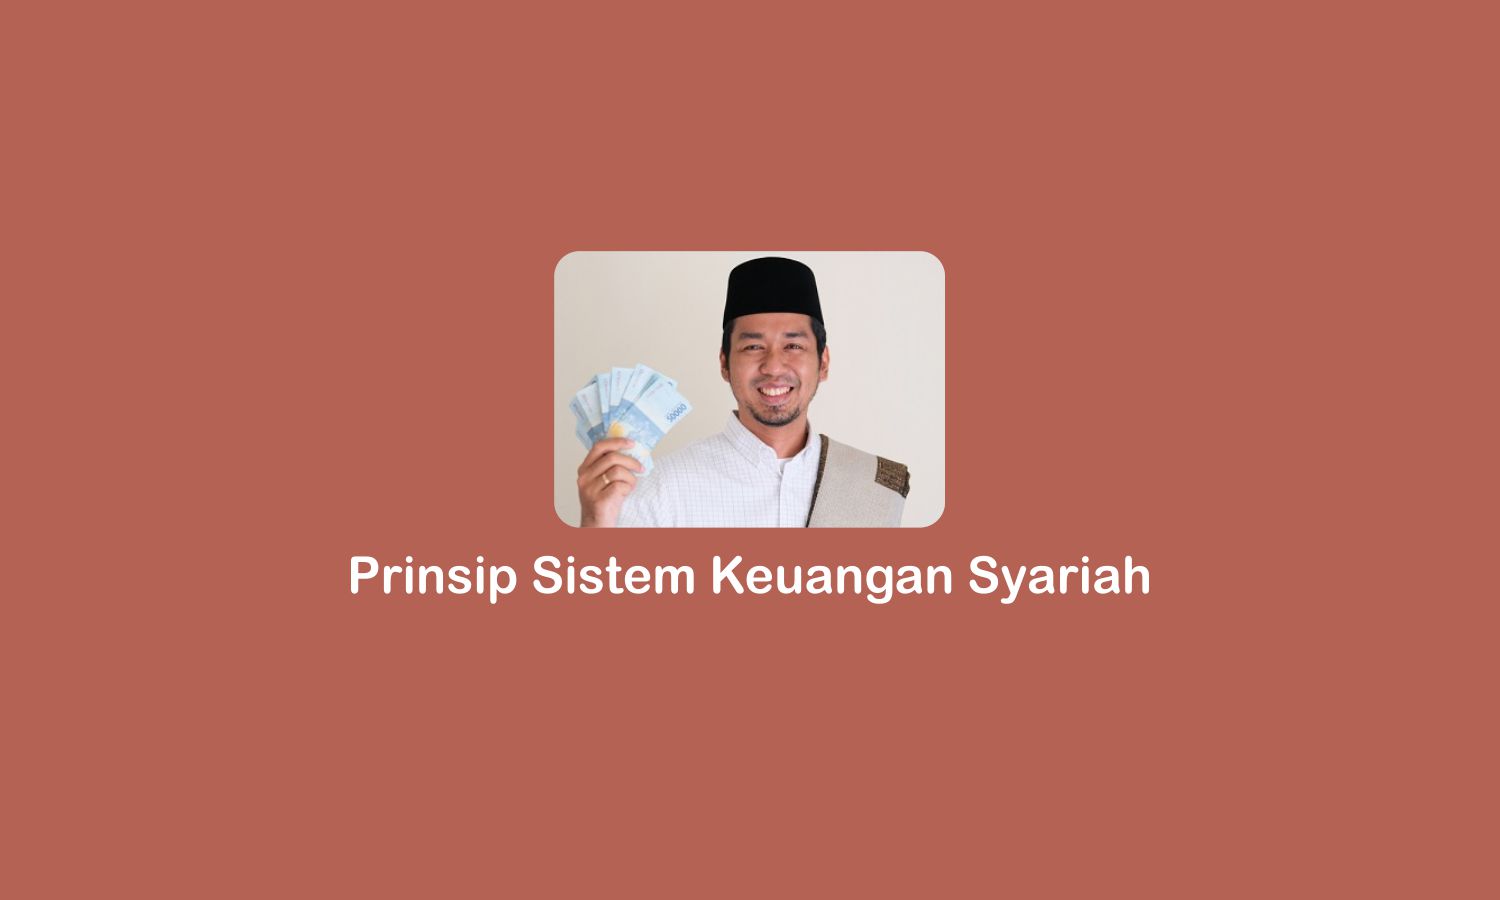 Prinsip Sistem Keuangan Syariah